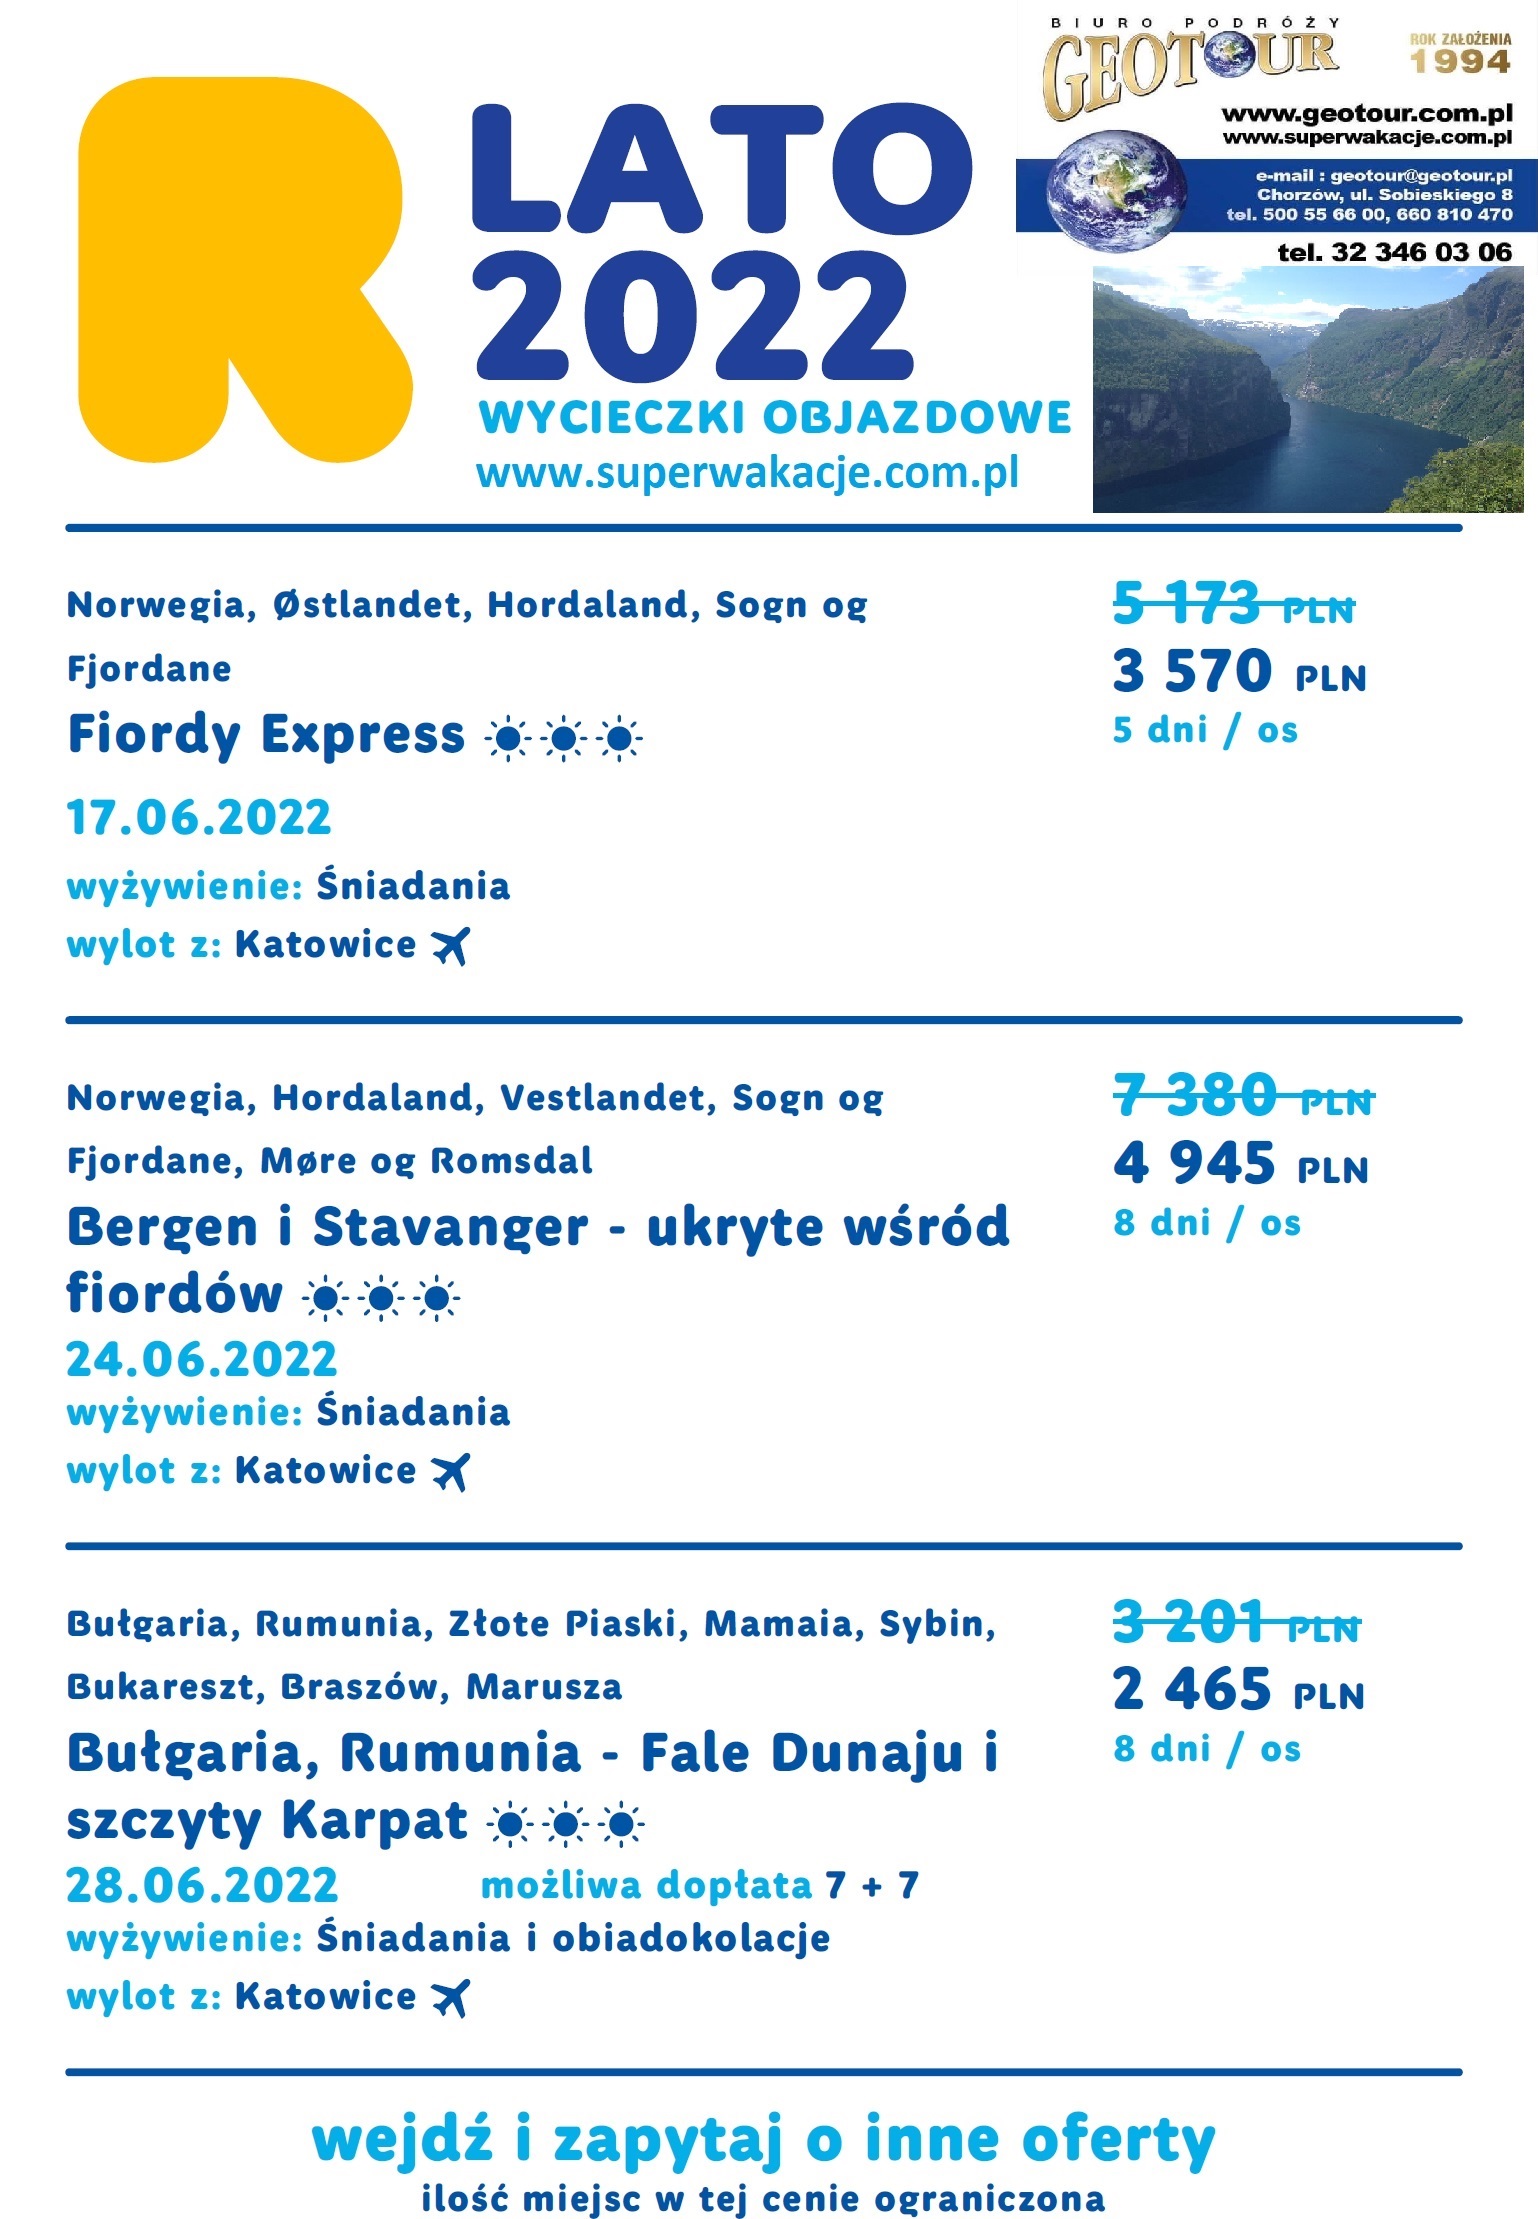 Rainbow Tours Chorzów – Aktualne oferty turystyczne – tel 32 3460306